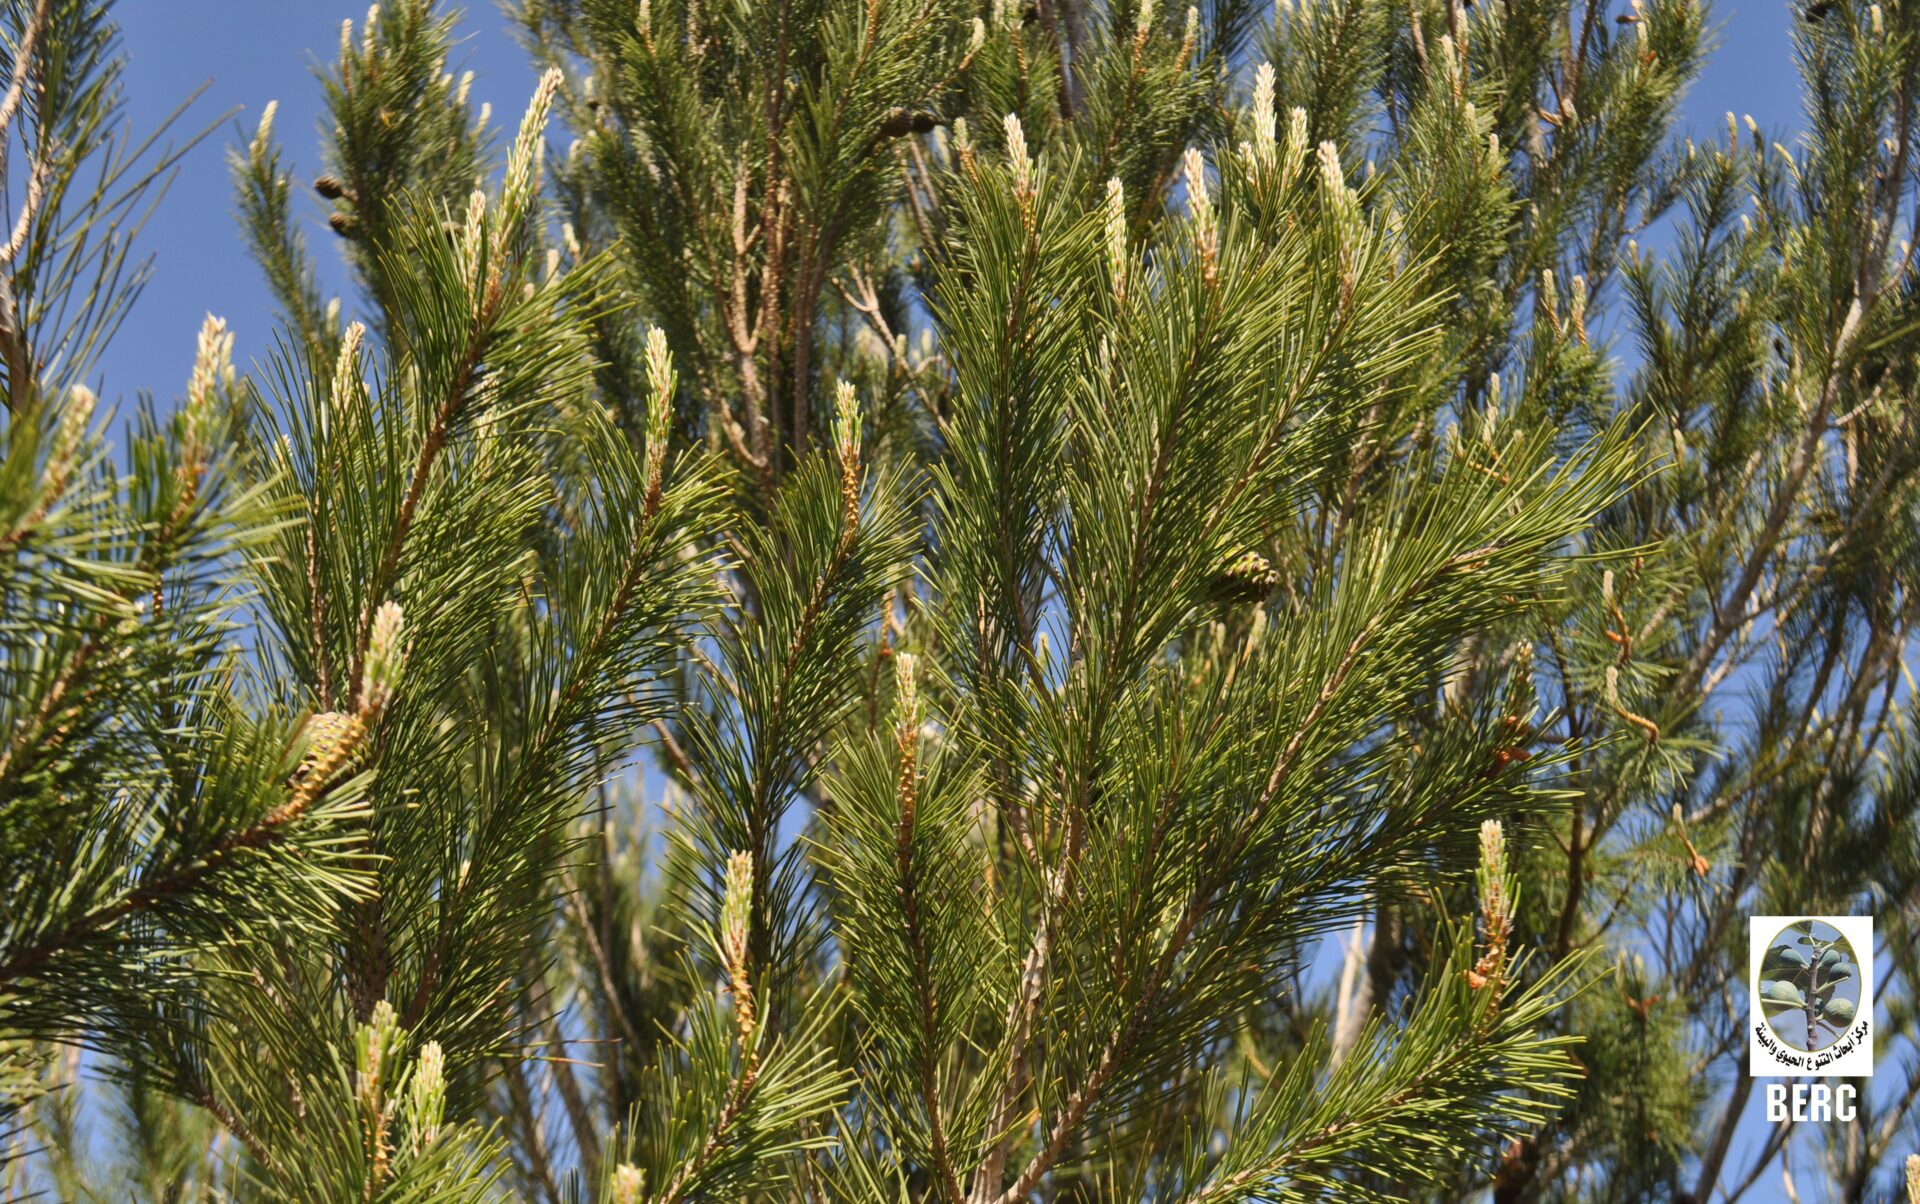 Aleppo Pine